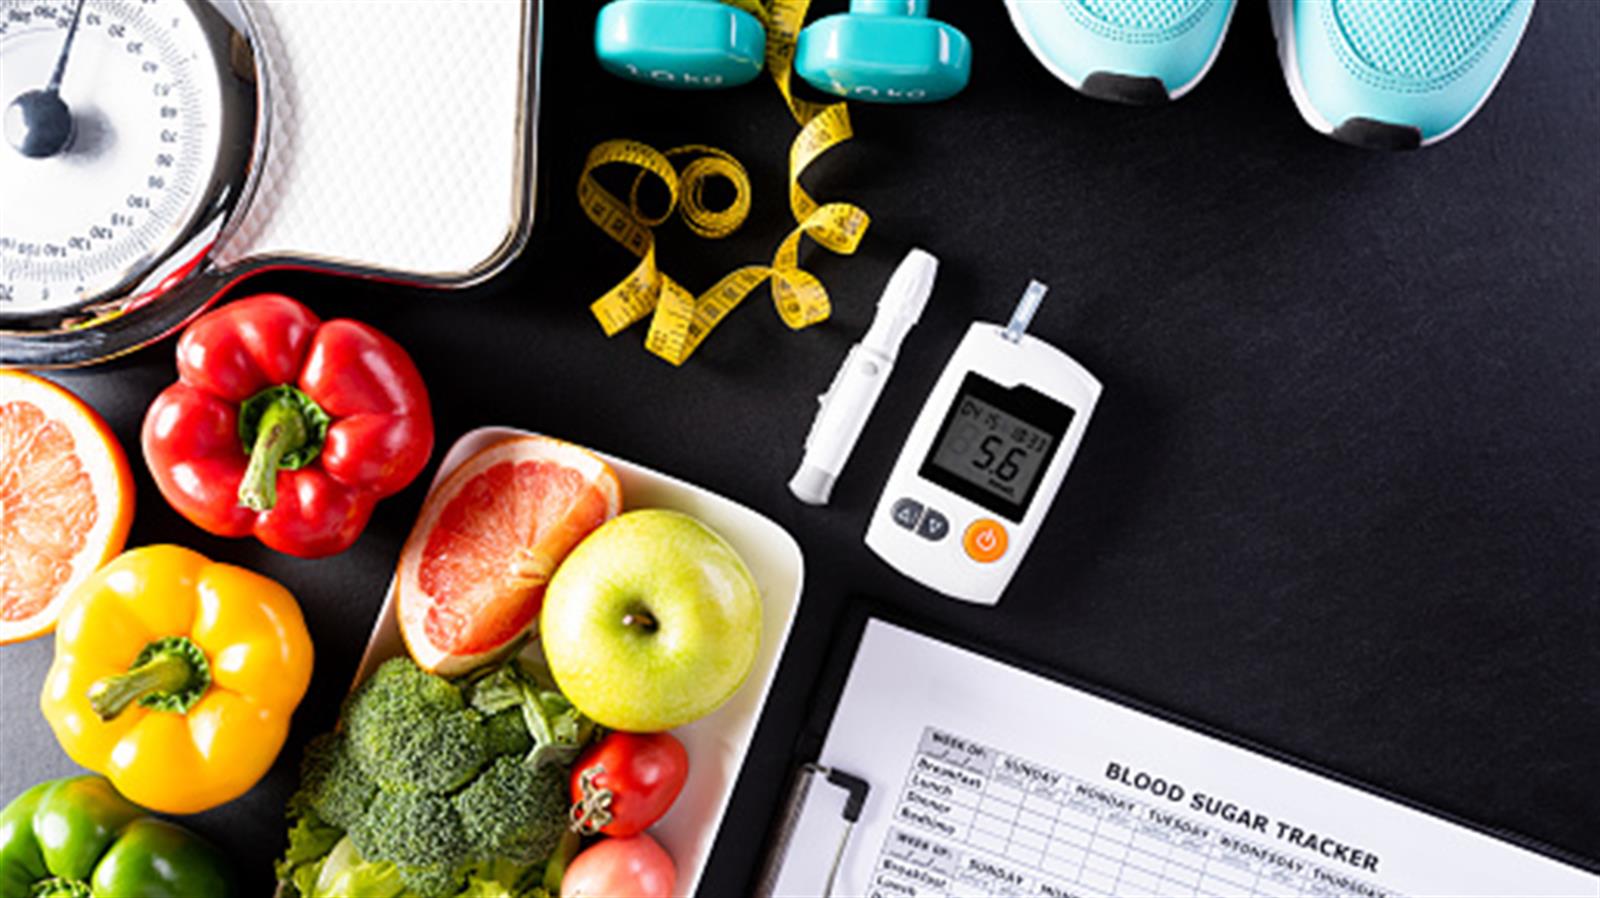 糖尿病患者注意! 除了飲食和運動外 還有這7大影響血糖的因素